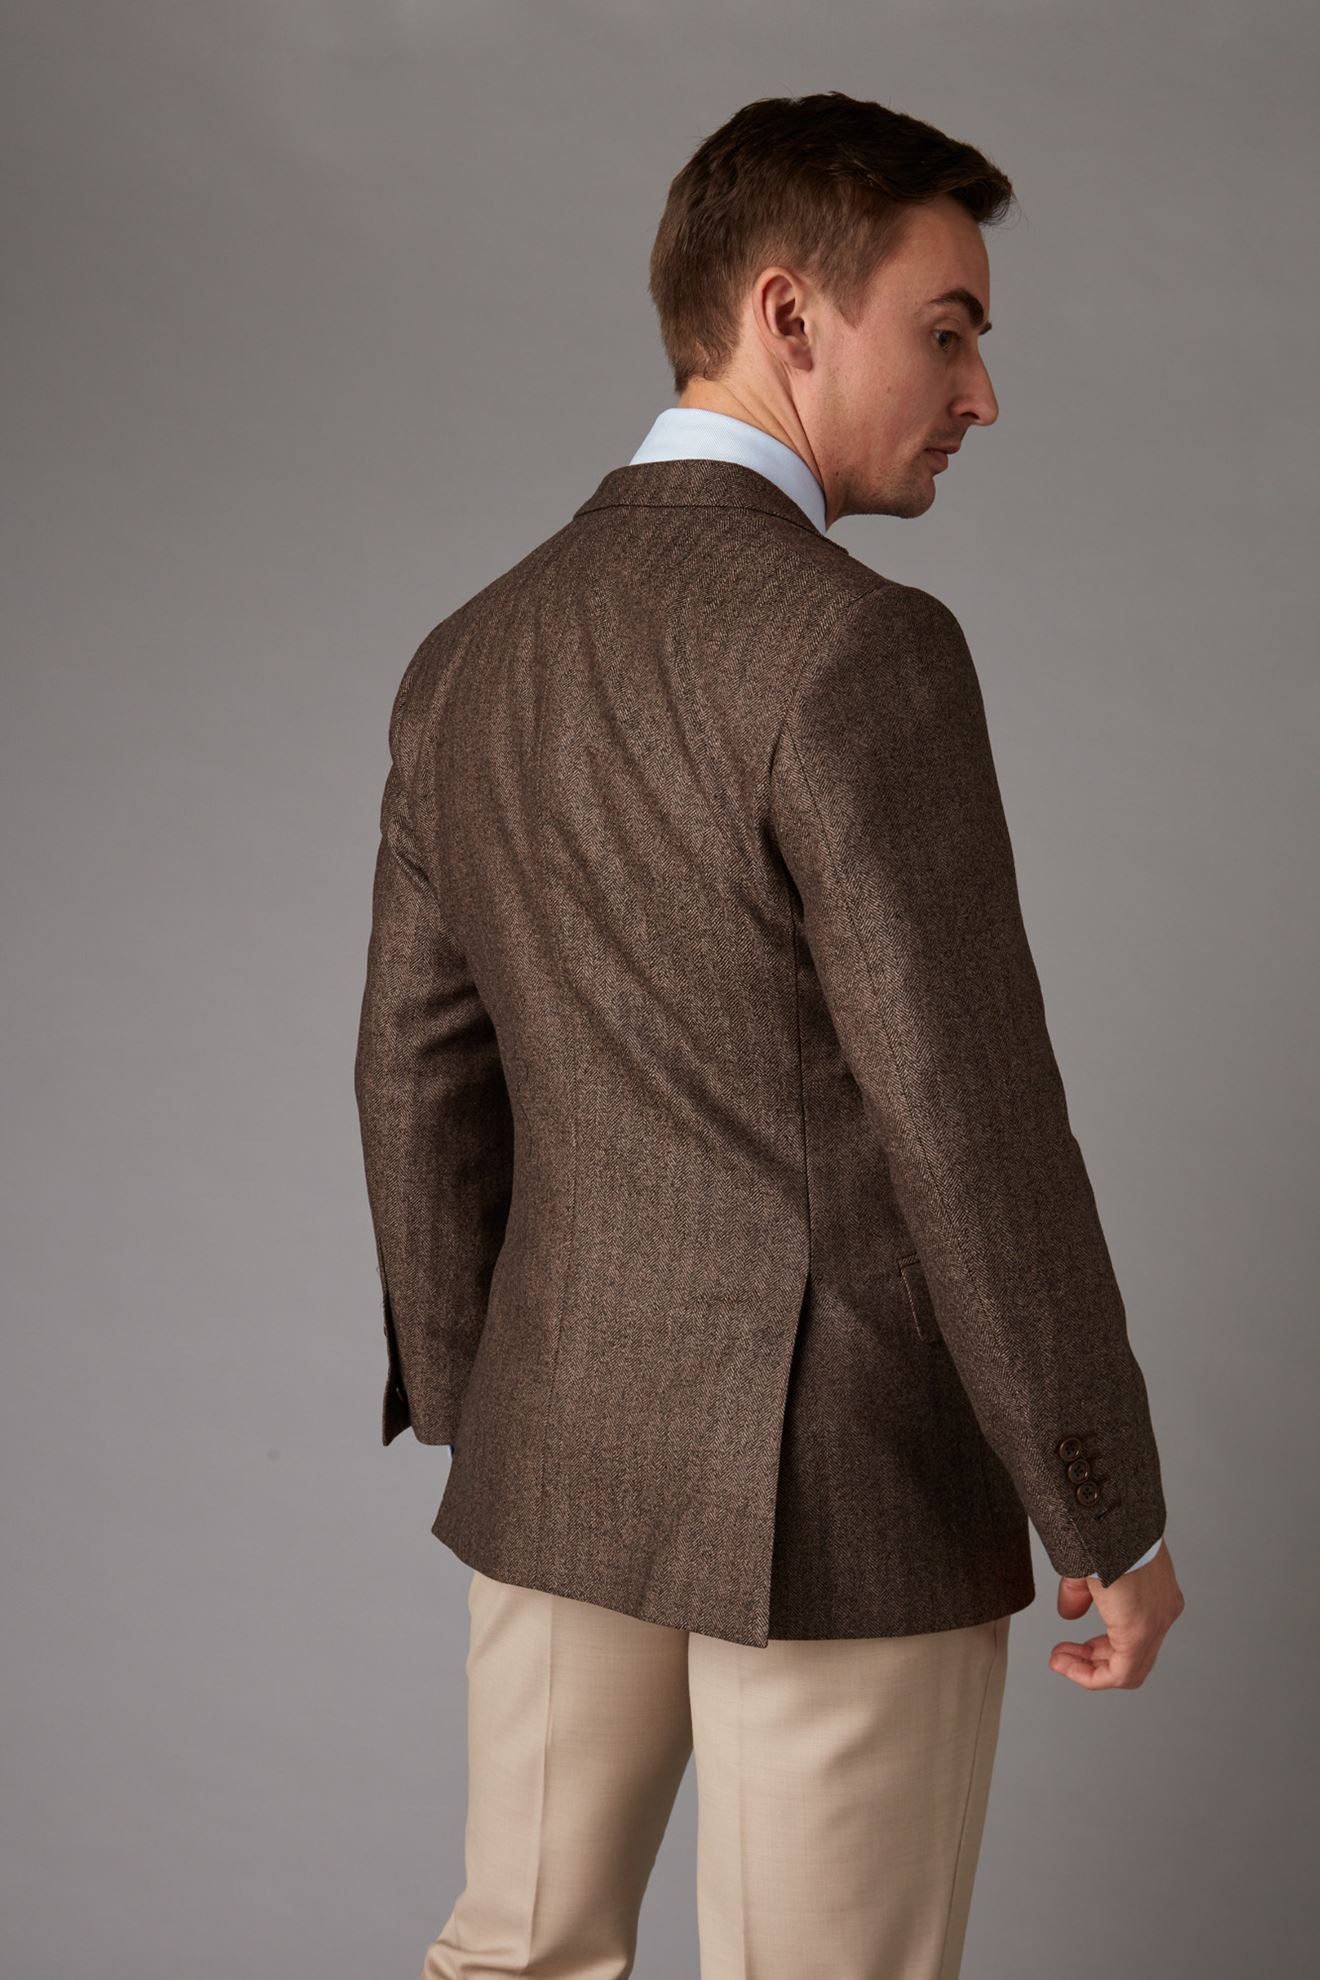 Brown tweed jacket back